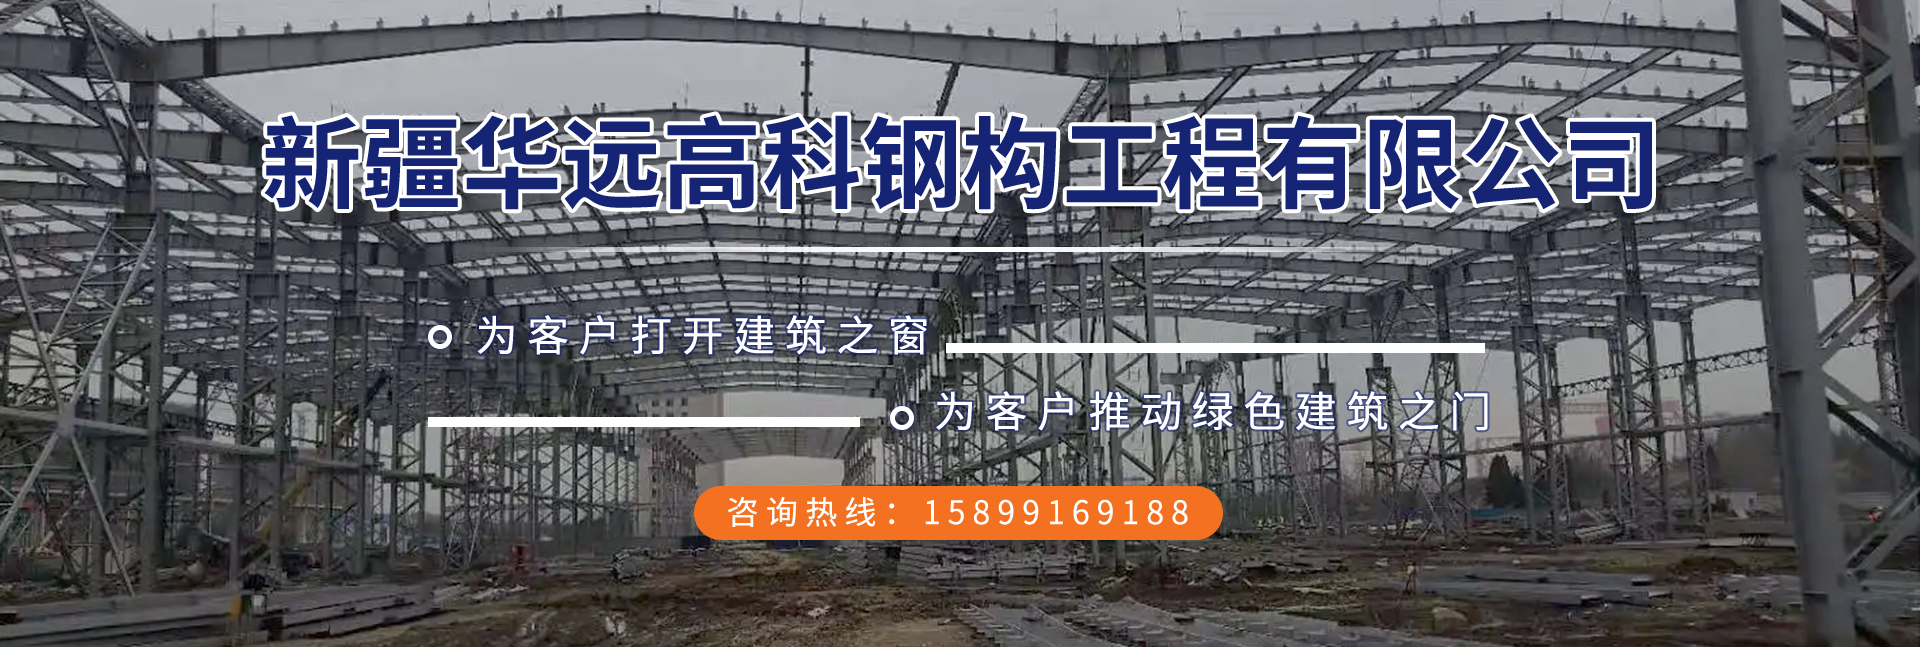 新疆钢结构,新疆钢结构厂家,乌鲁木齐钢结构